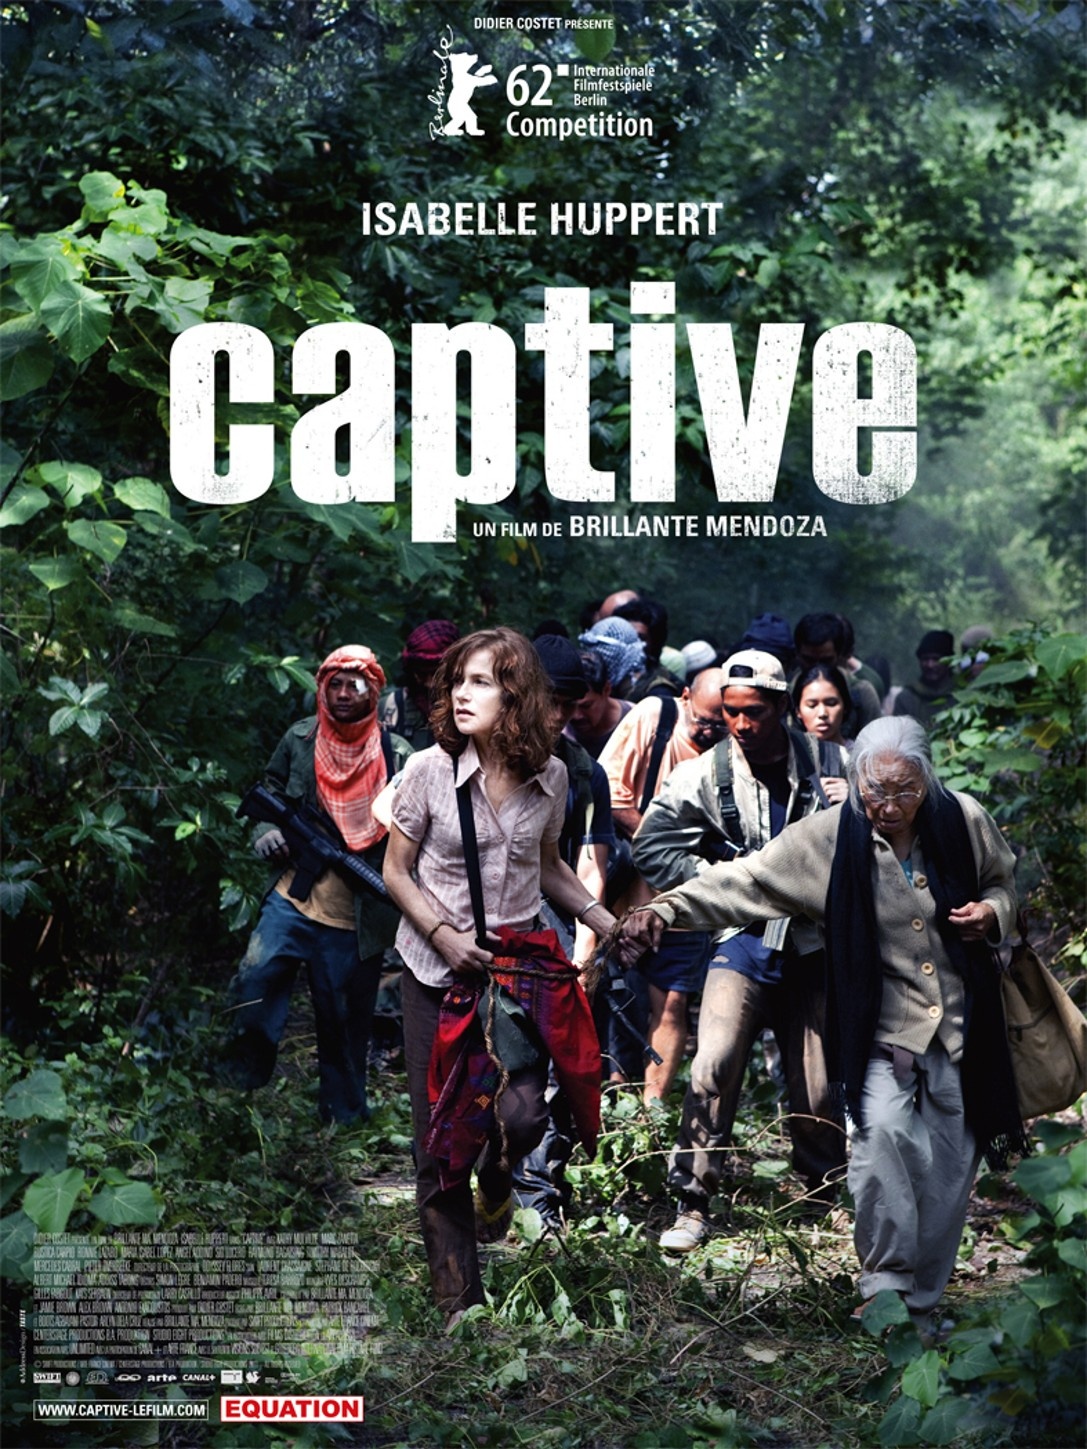 Caratula de Captive (Captured) (Cautiva) 